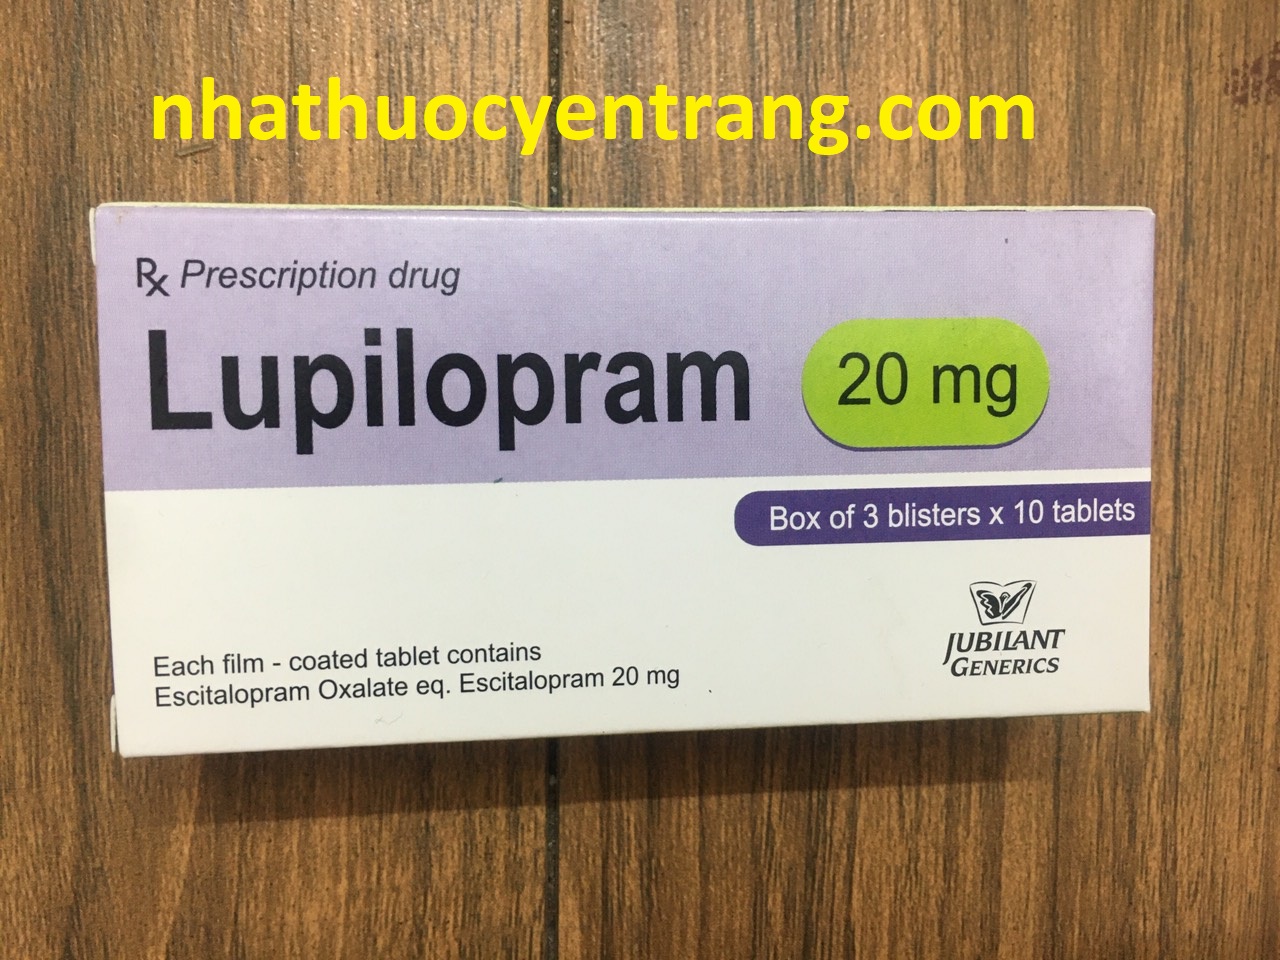 Lupilopram 20mg